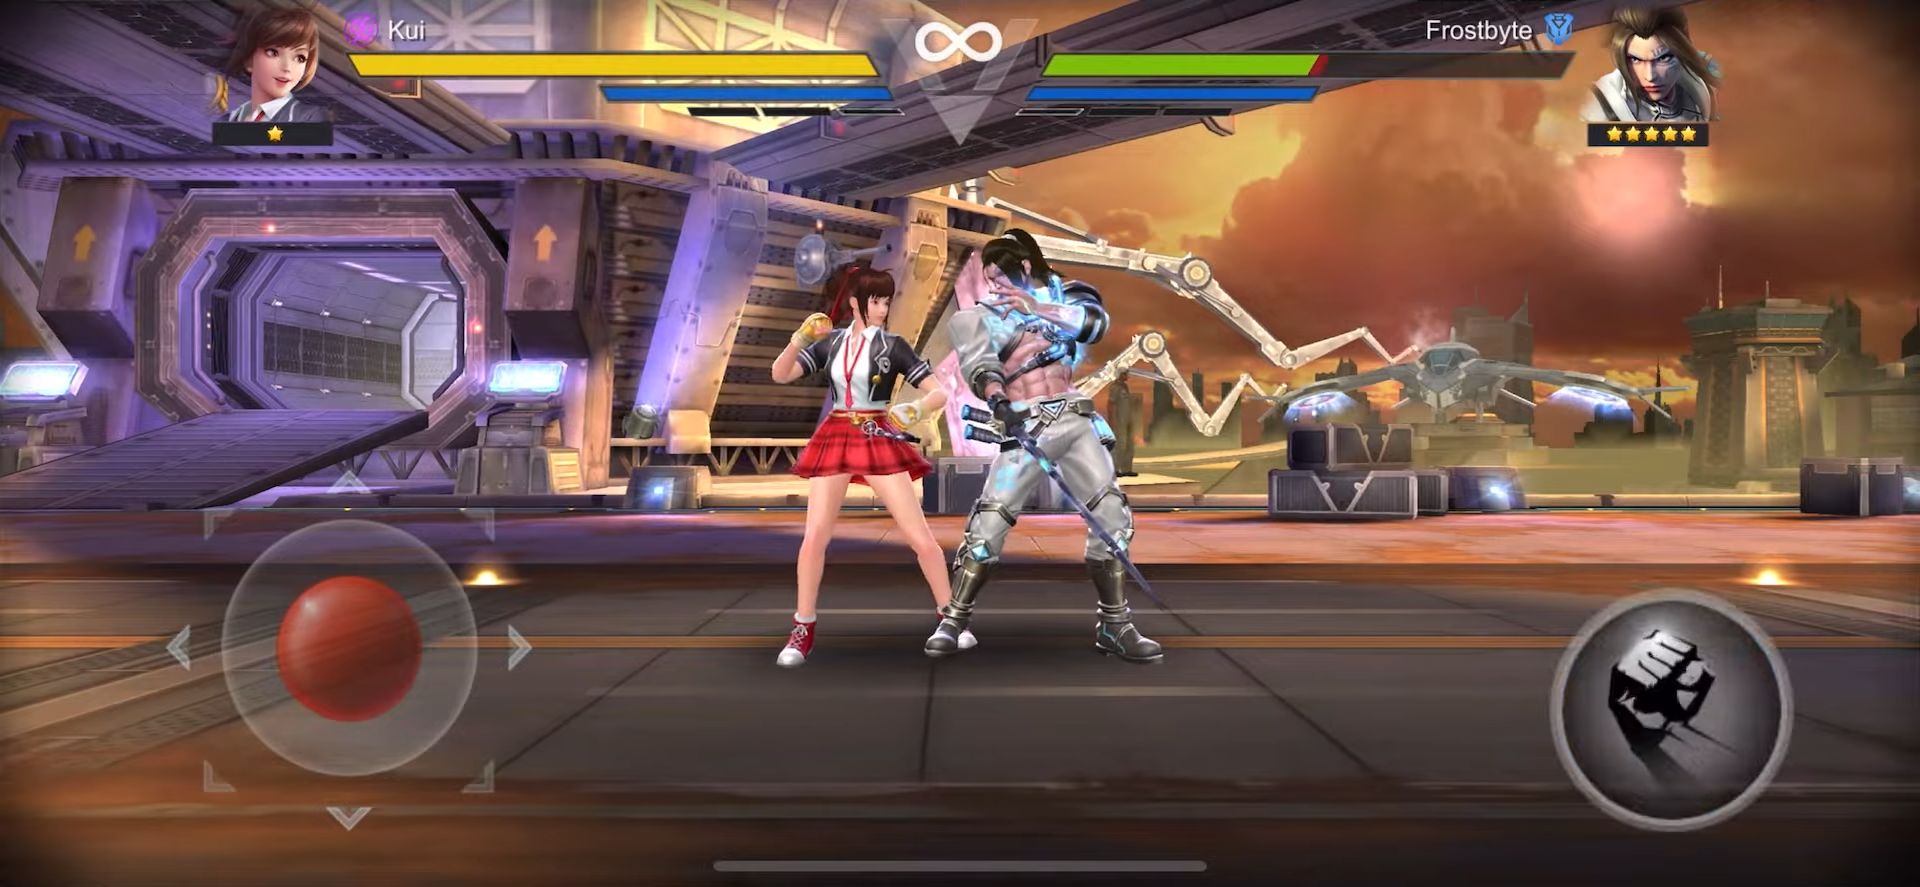 Download Final Fighter: Fighting Game für Android kostenlos.